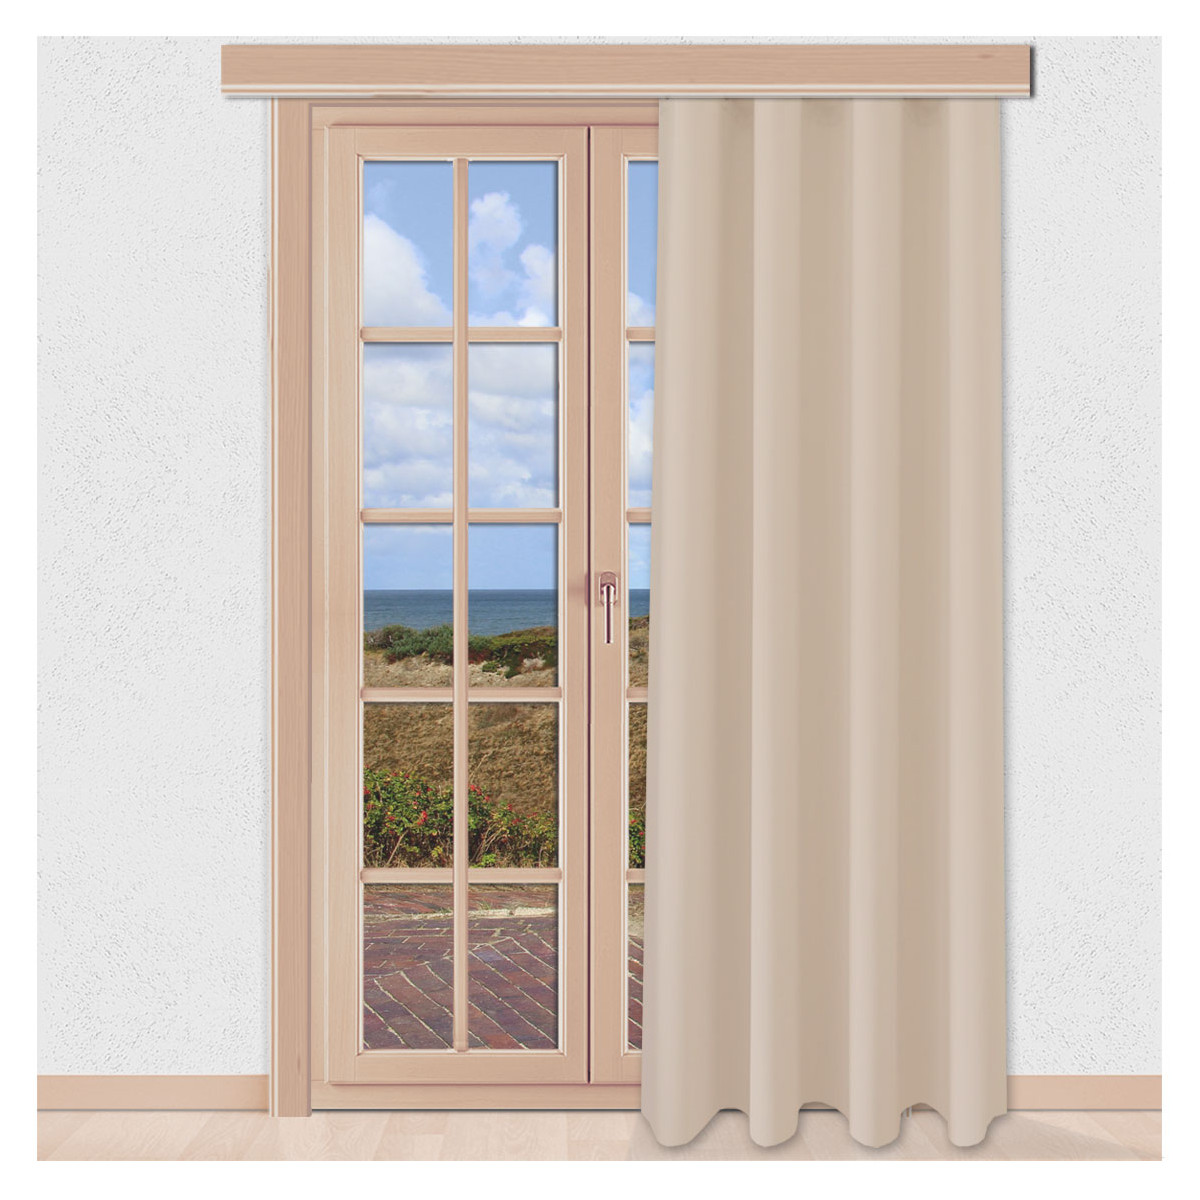 Verdunklungs-Vorhang Mattis Hellbeige mit Reihband Sunout Fertiggardine an einem Terrassenfenster